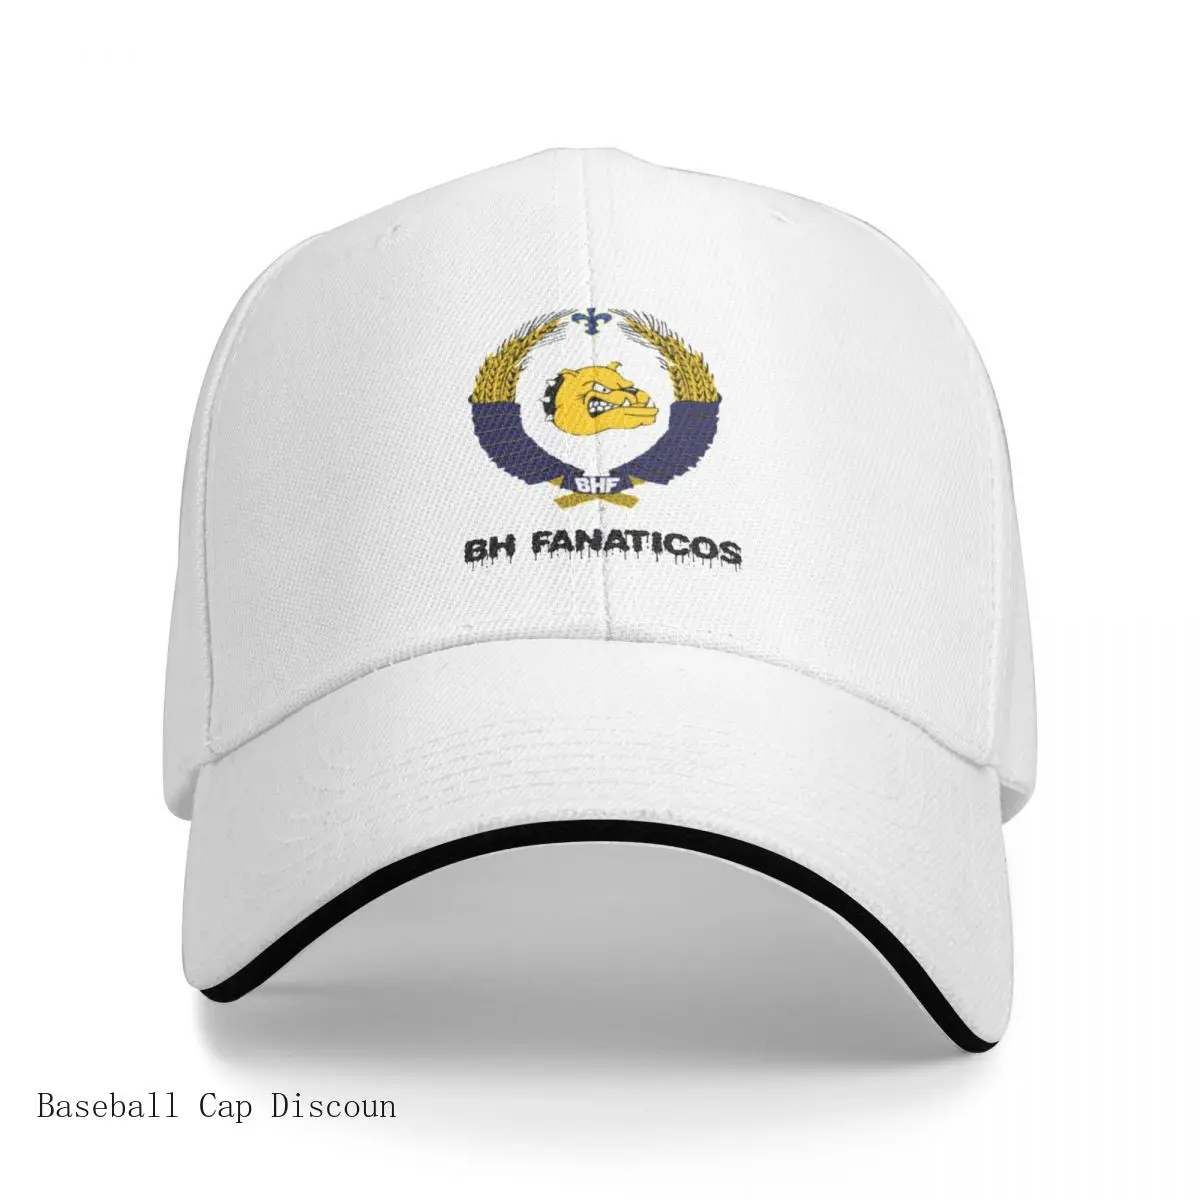 

New Bh fanaticos, reprezentacija BiH Cap Baseball Cap Mountaineering baseball hat funny hat Men's baseball cap Women's